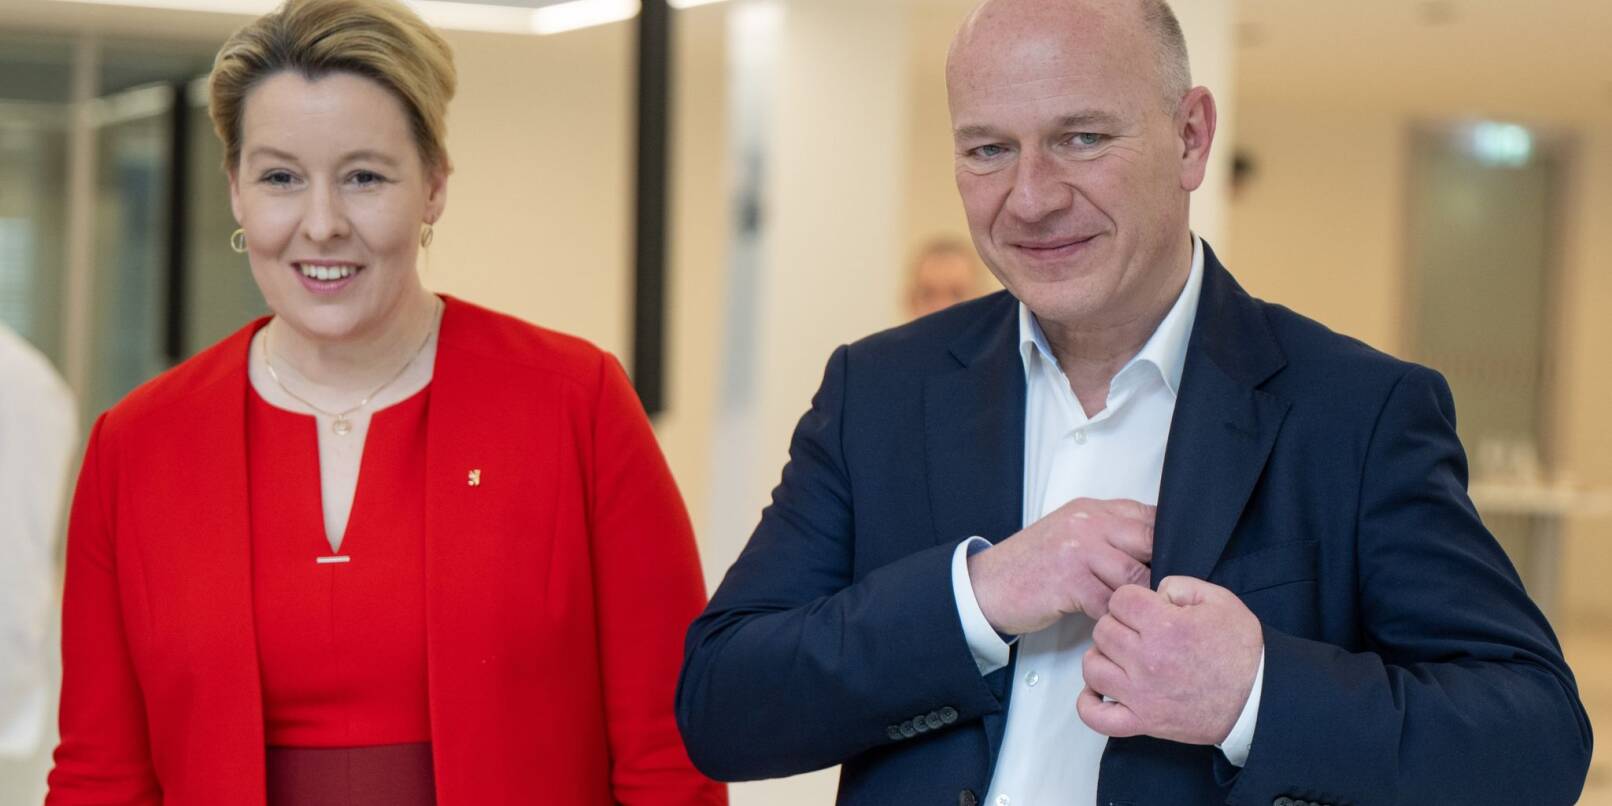 Franziska Giffey (SPD), Regierende Bürgermeisterin von Berlin, und Kai Wegner, Vorsitzender der CDU Berlin, nach einem Pressetermin zur Vorstellung des ausgehandelten Koalitionsvertrags.